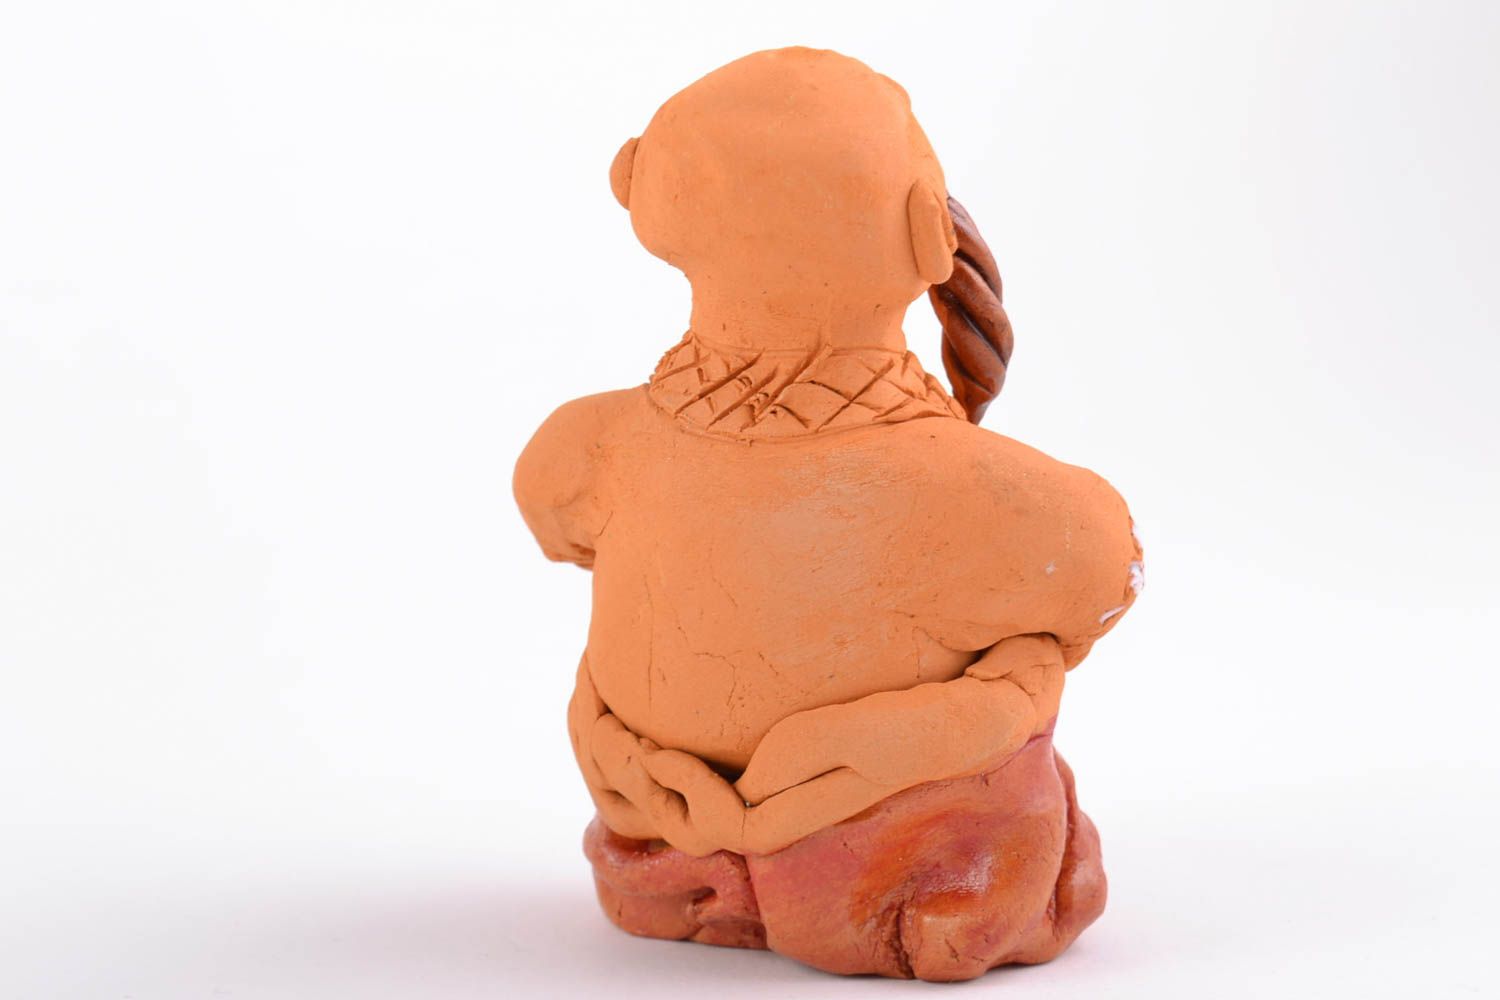 Фигурка из глины казак с трубкой смешной красивый маленького размера хэнд мейд фото 4